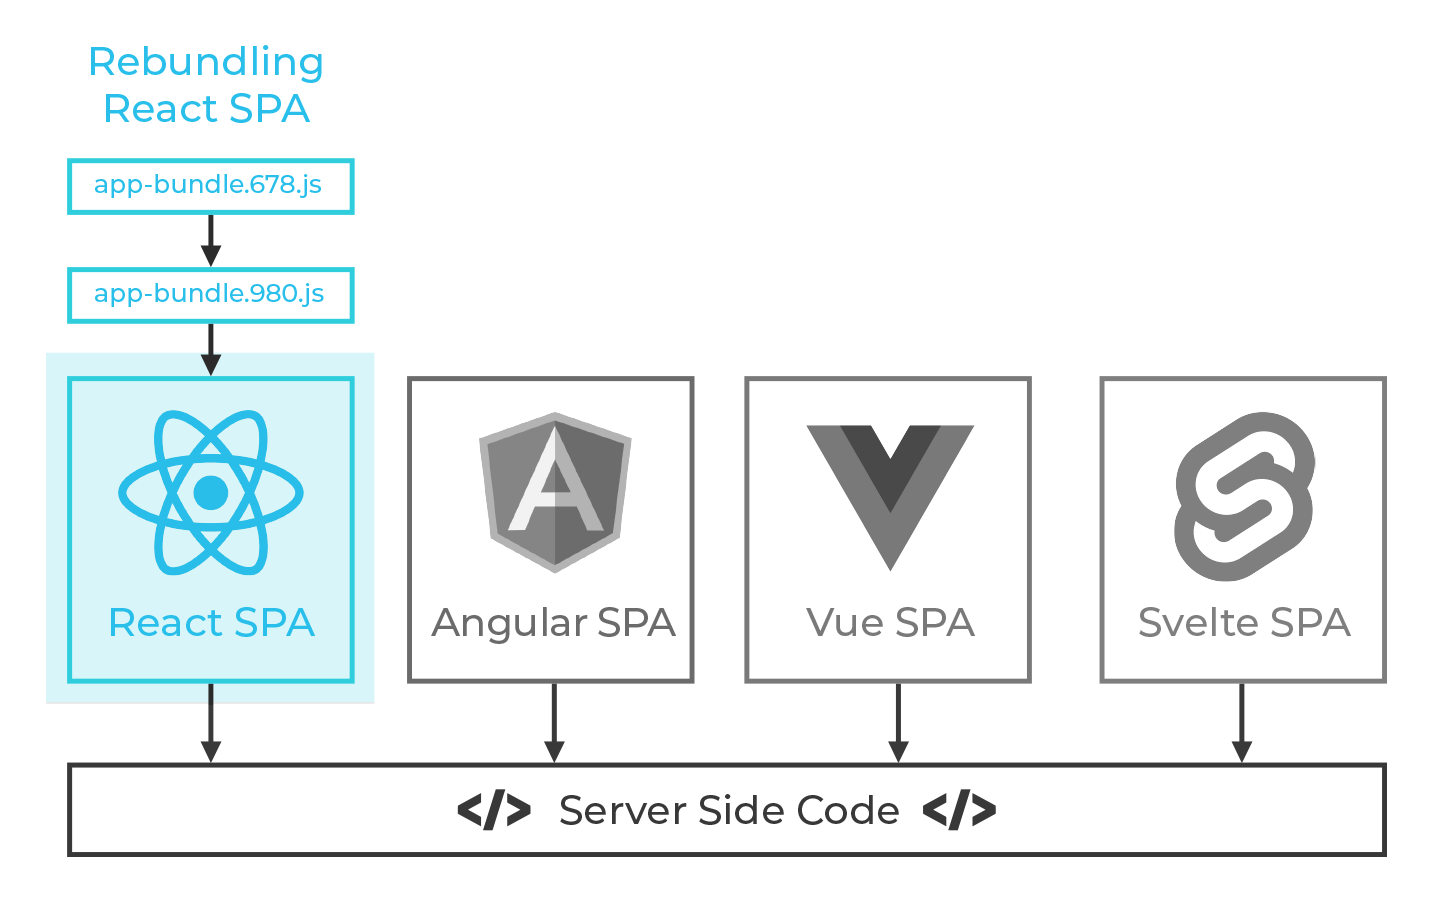 Server Side Coding